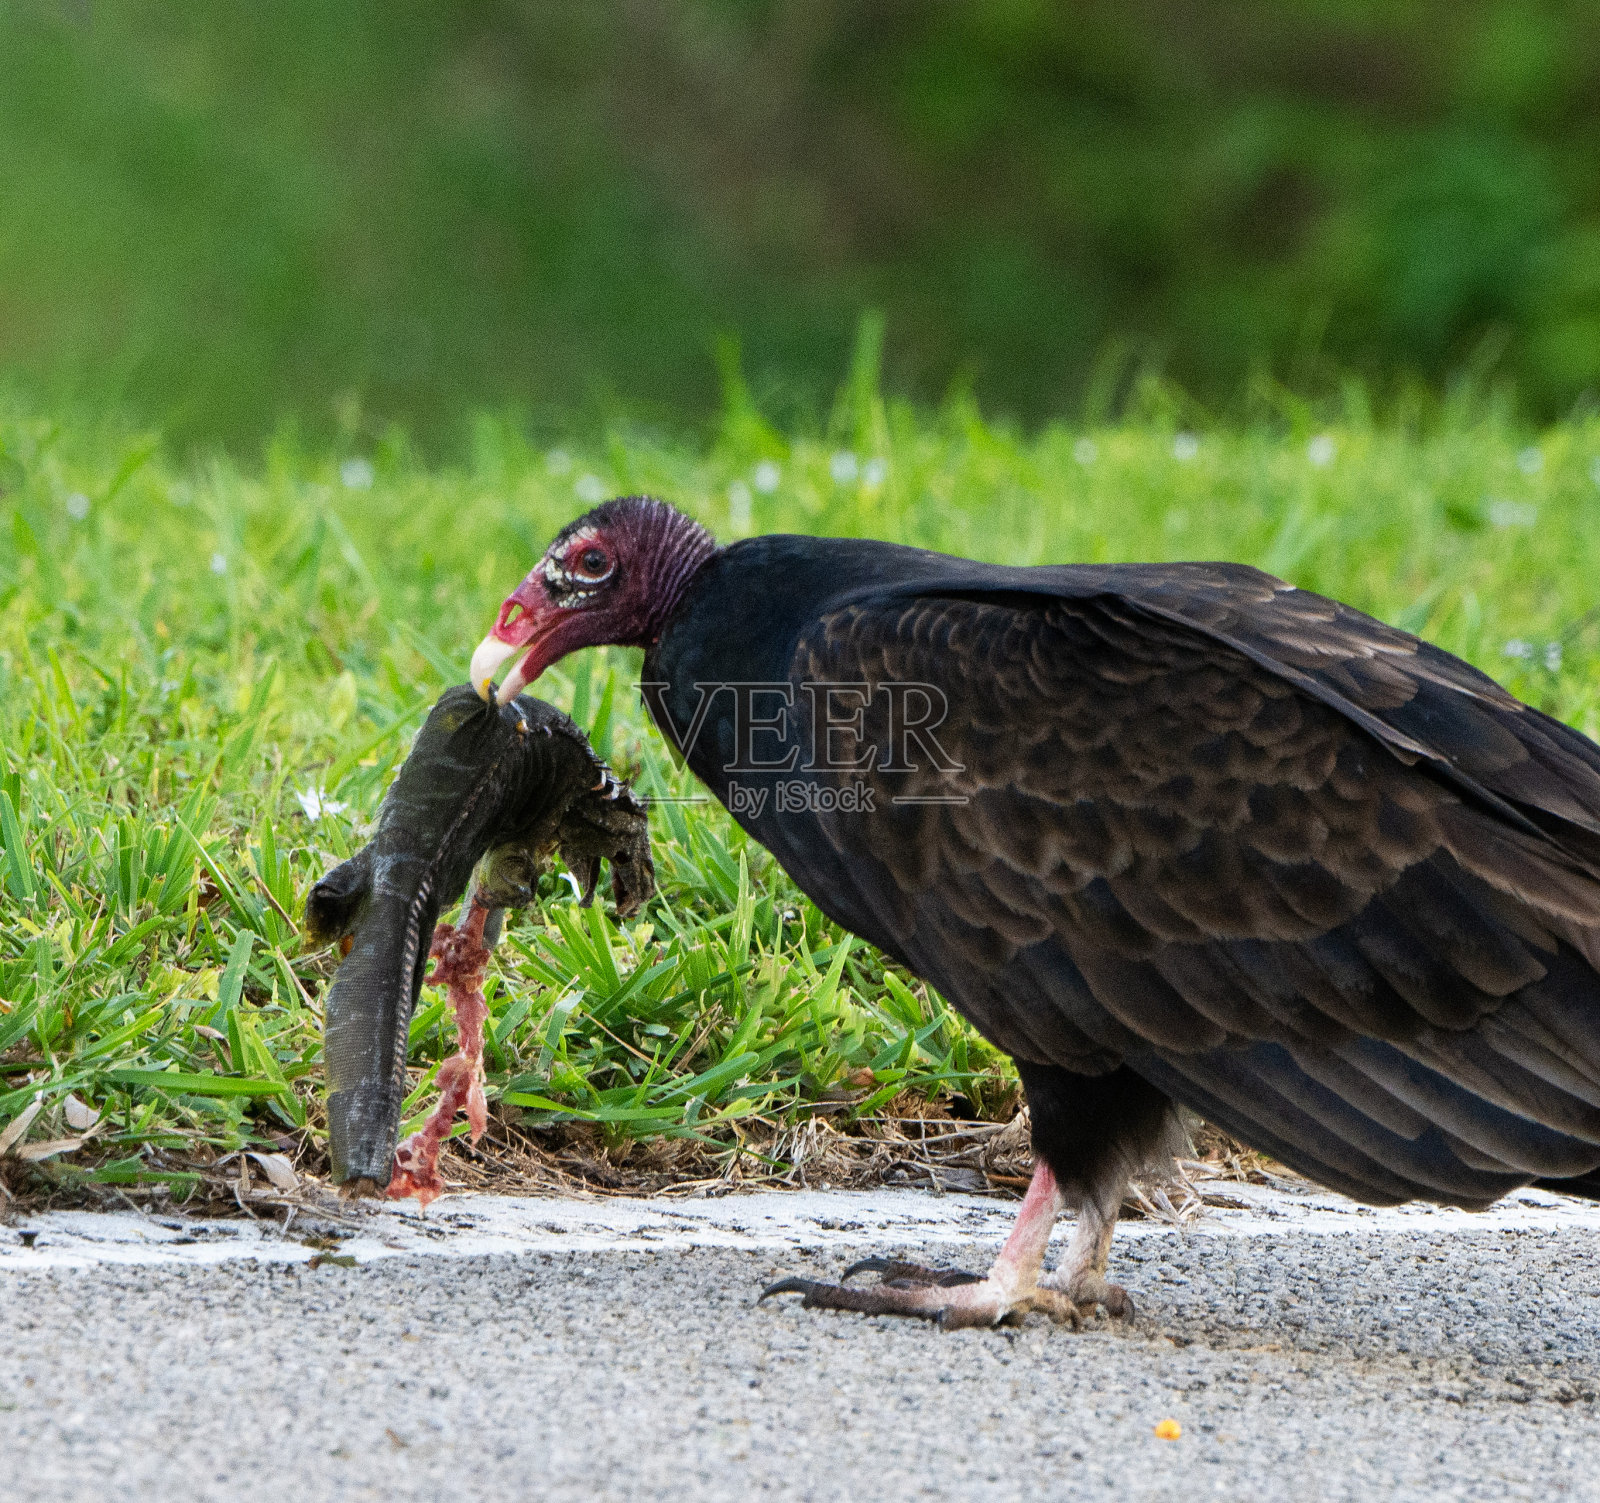 土耳其秃鹫正在吃鬣蜥尸体照片摄影图片